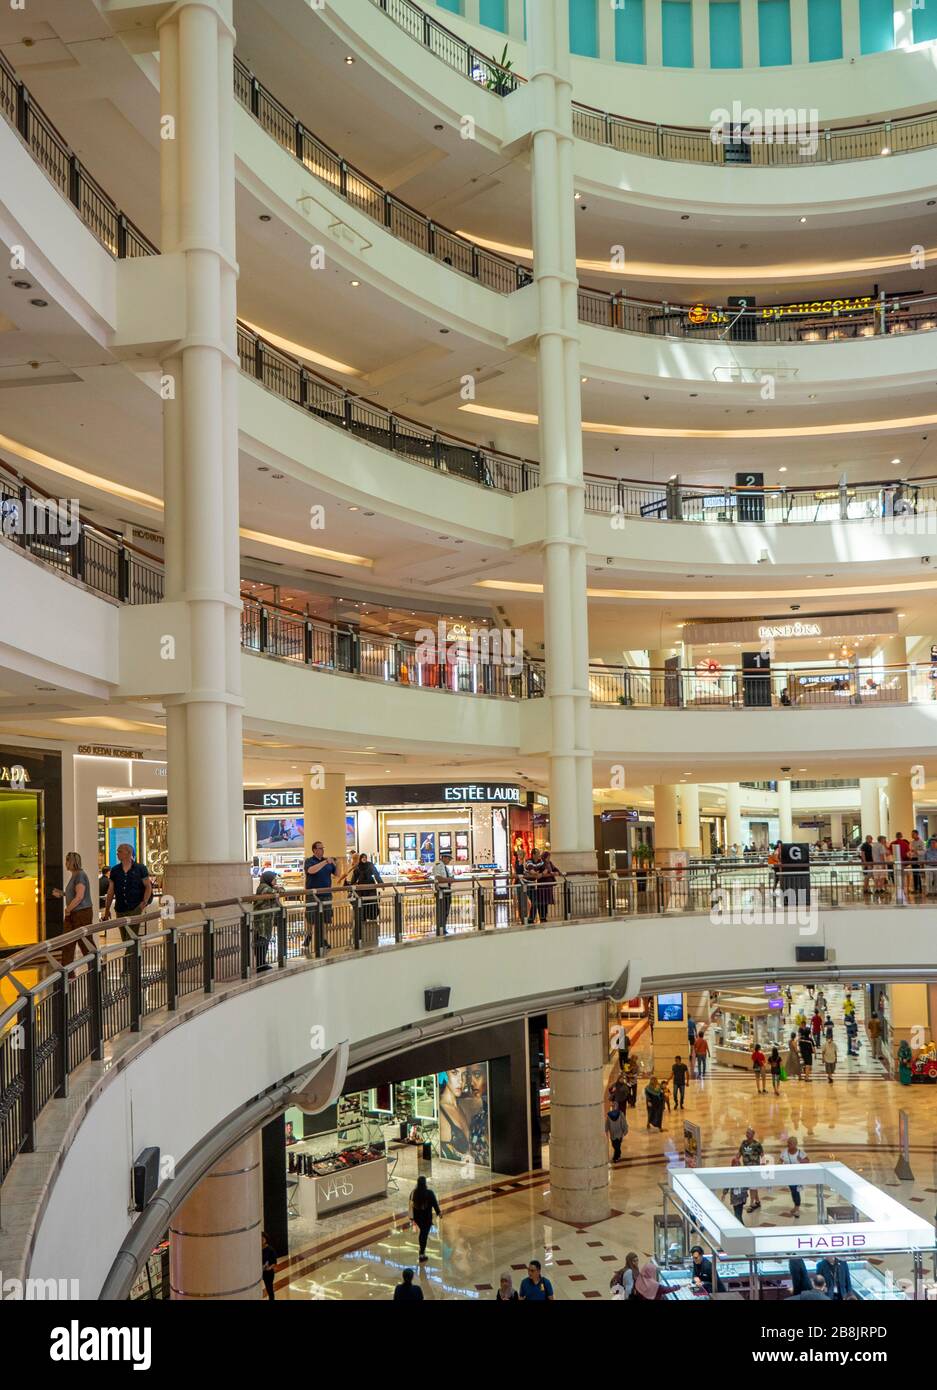 Magasins et boutiques à plusieurs niveaux au centre commercial Suria KLCC, au pied des tours Petronas Kuala Lumpur en Malaisie. Banque D'Images